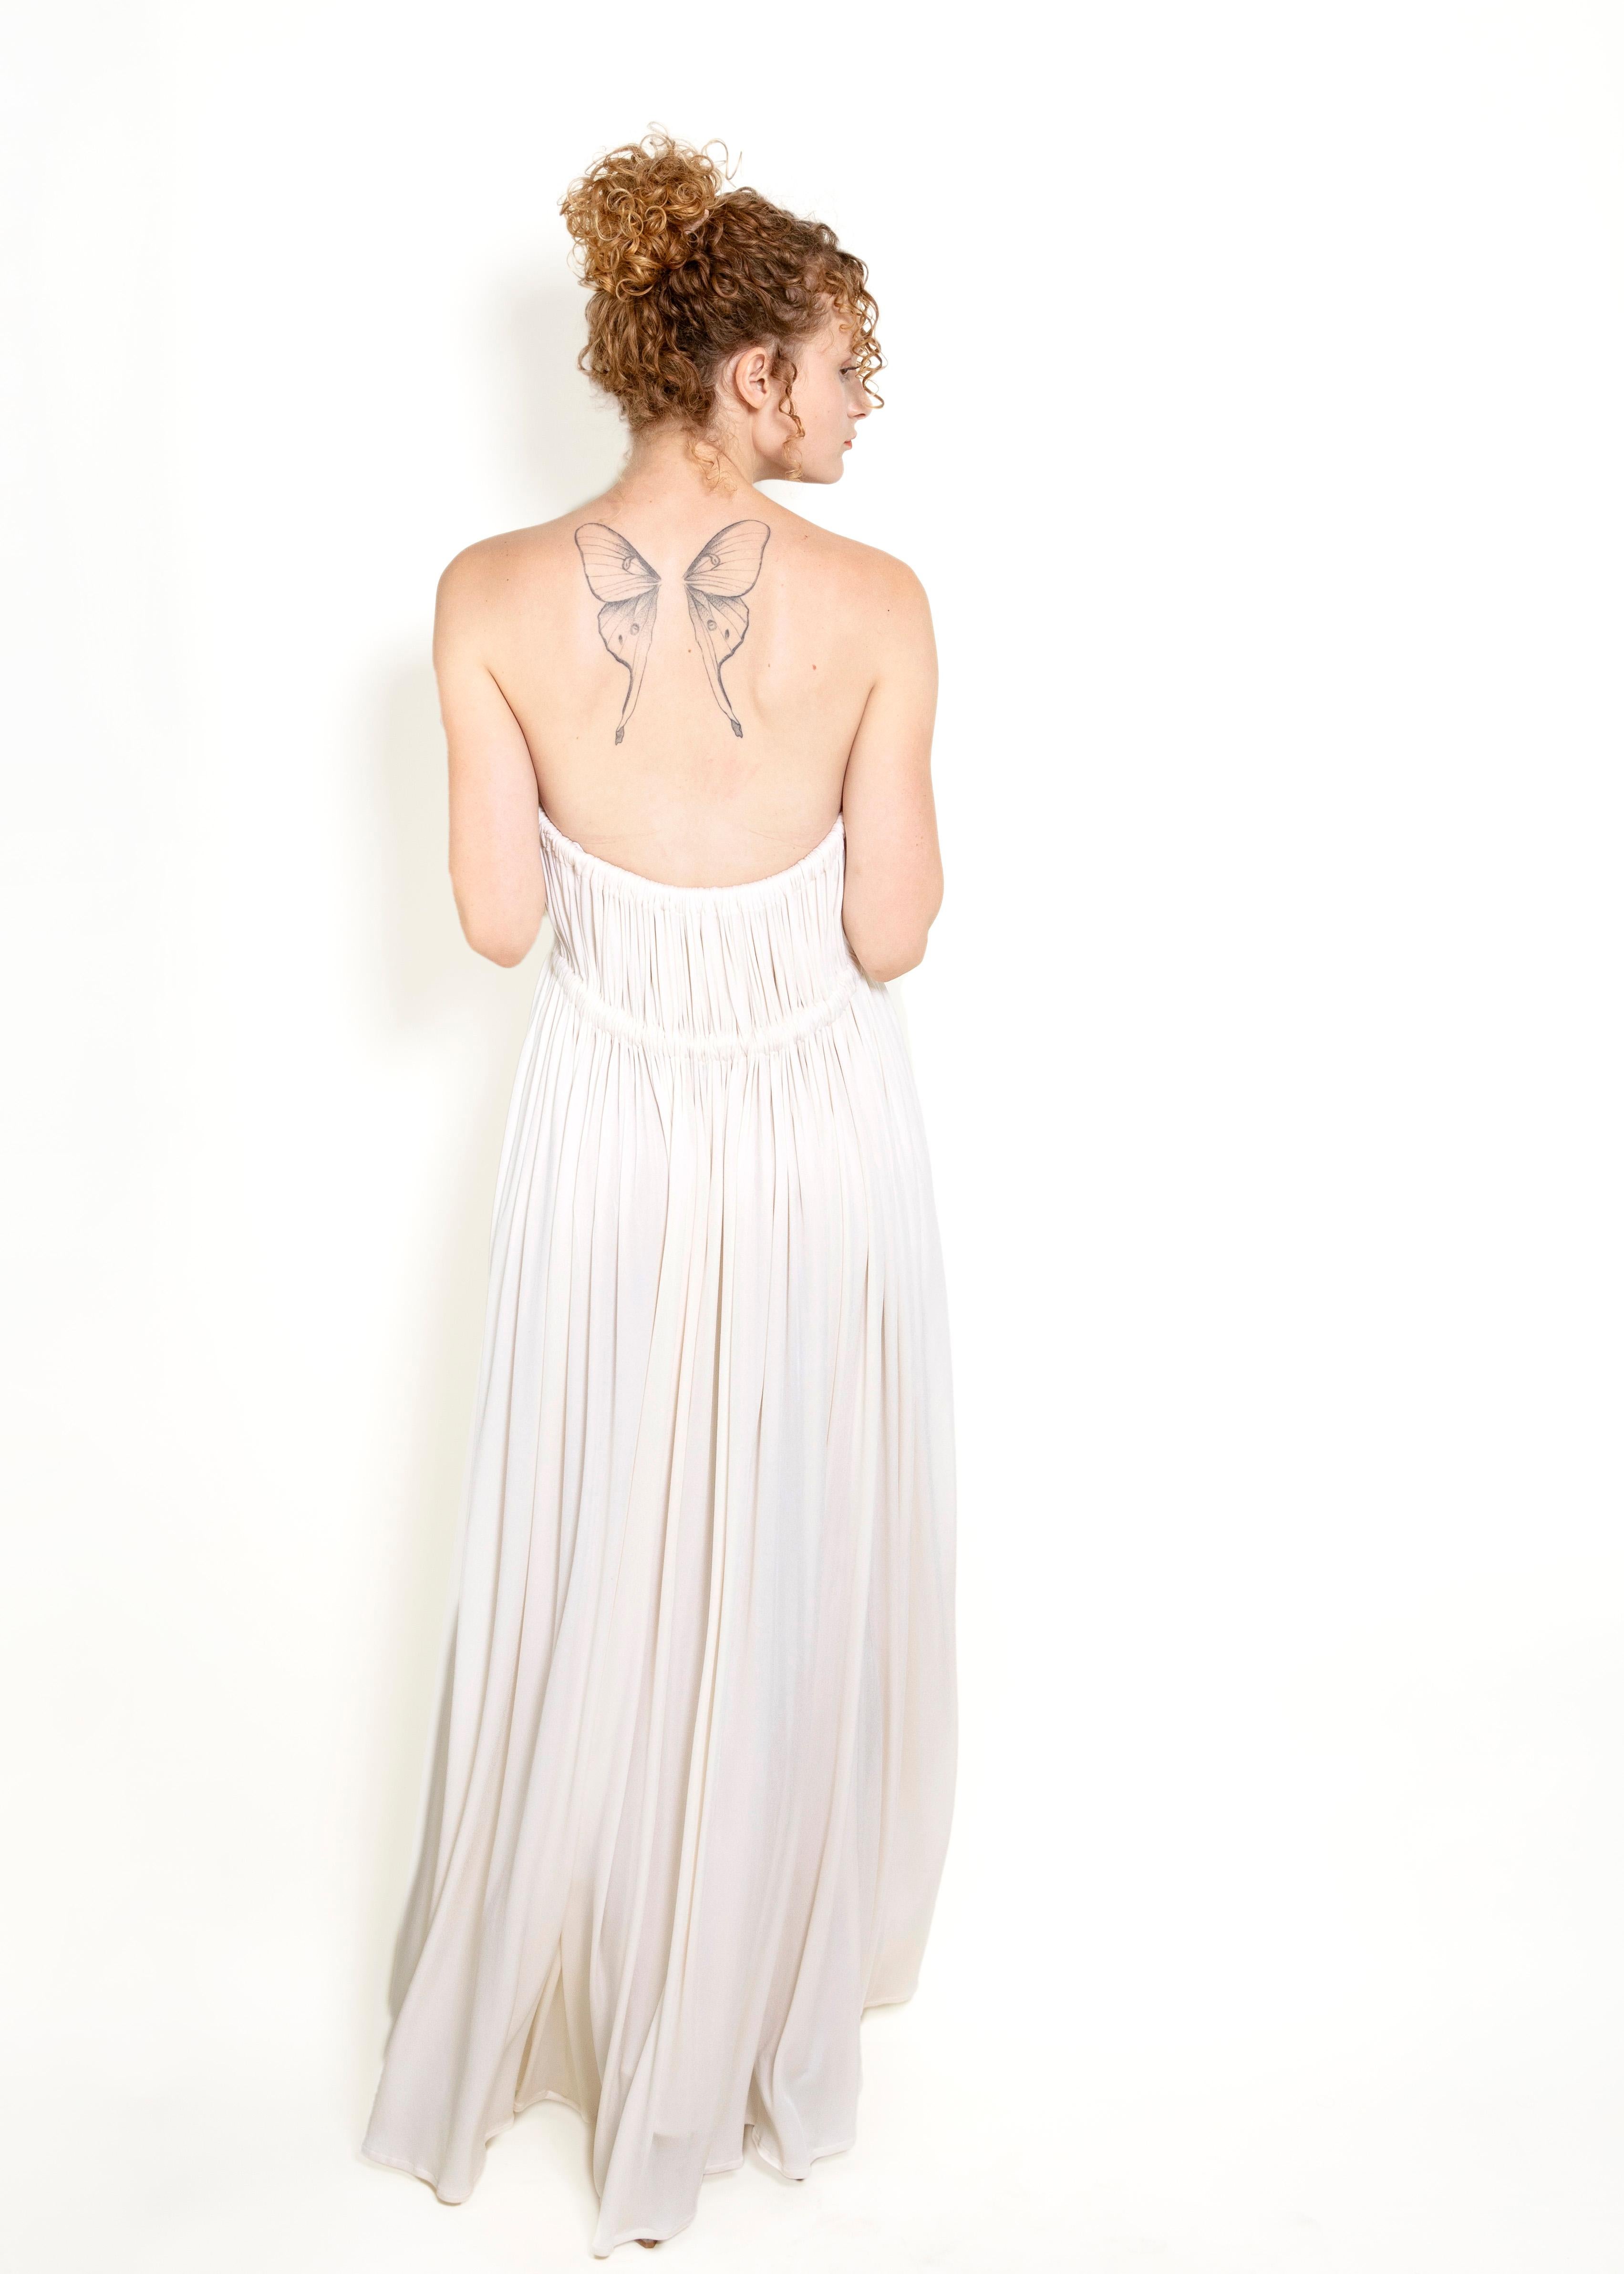 Geoffrey Beene White Grecian Style Strapless Dress 1